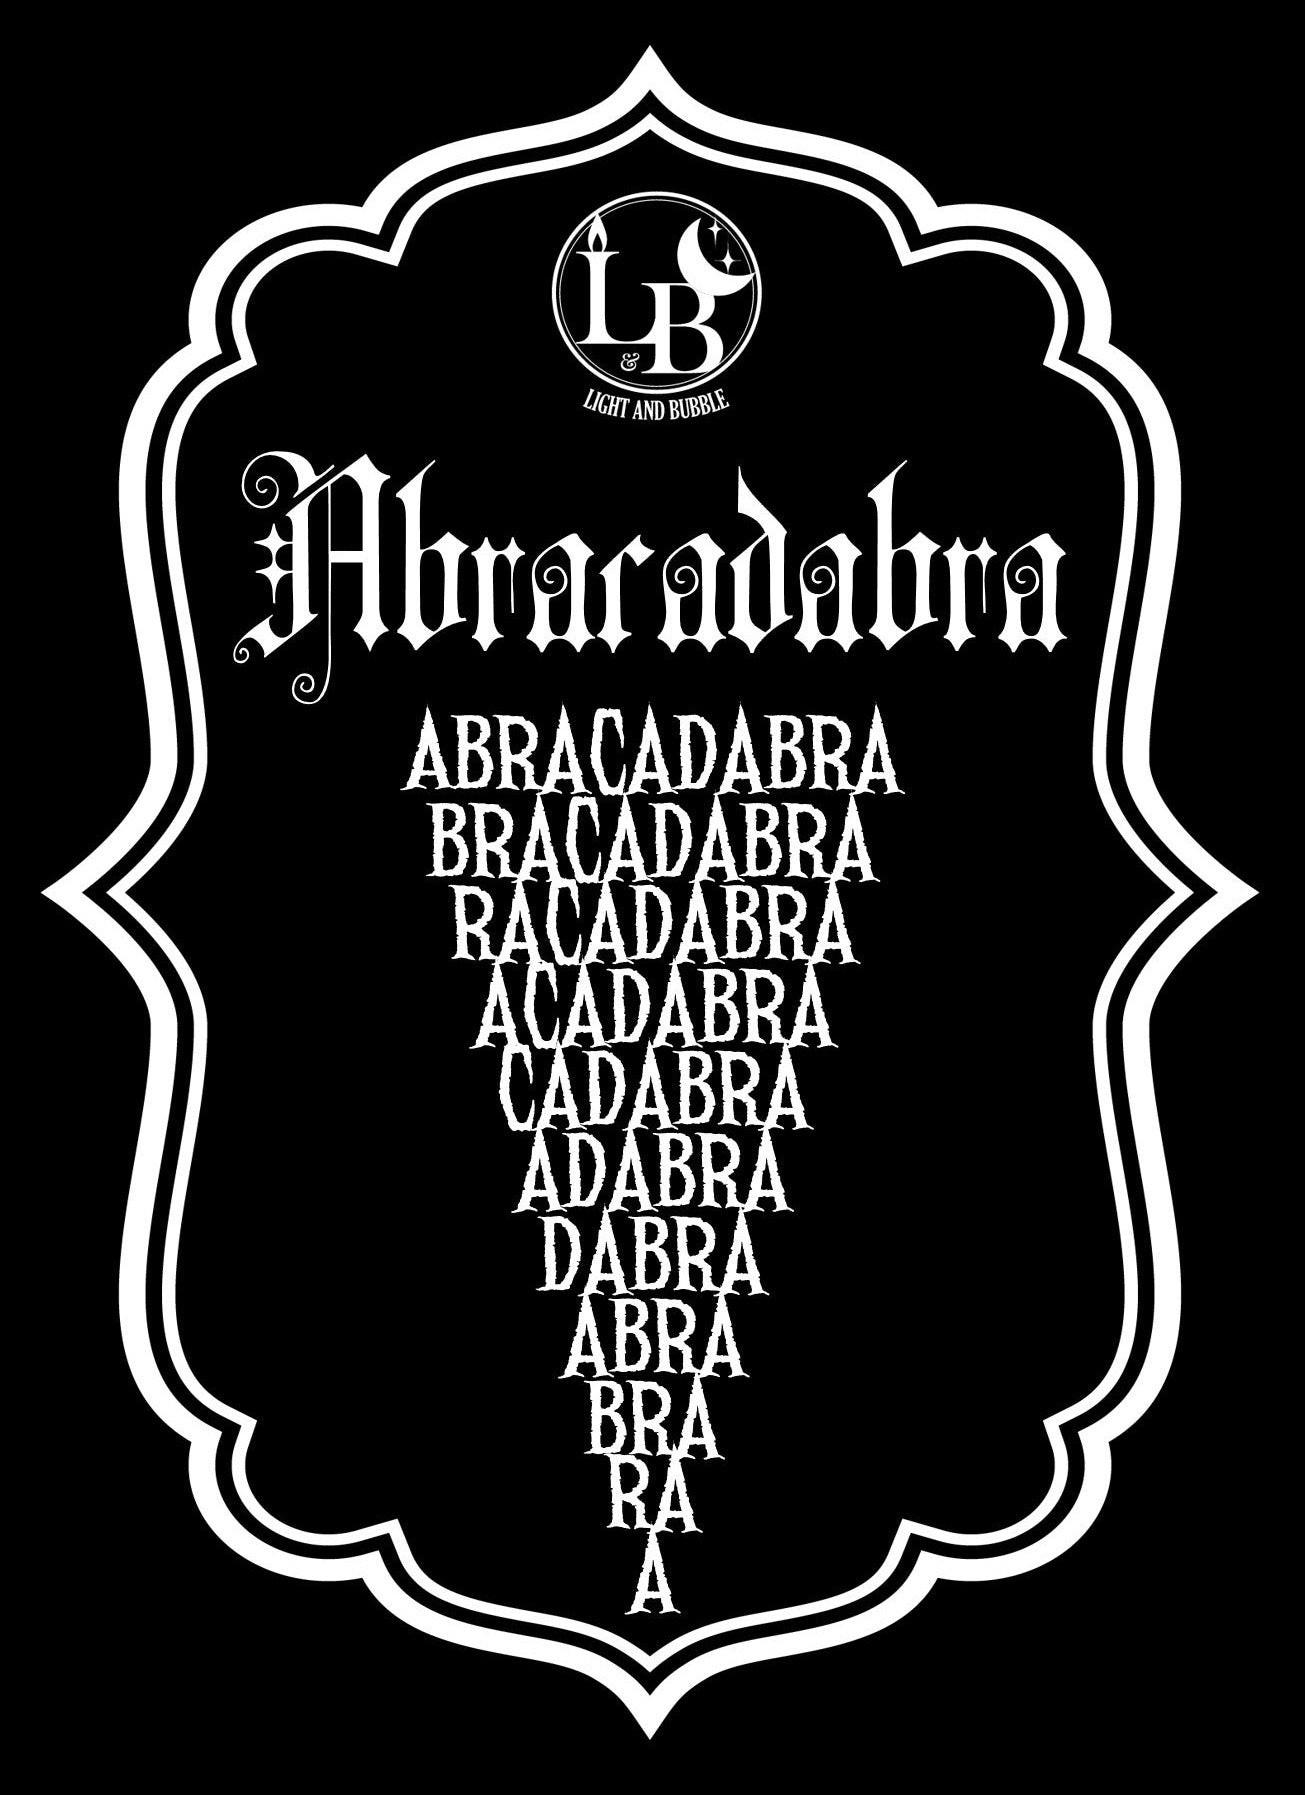 ABRACADABRA - bougie